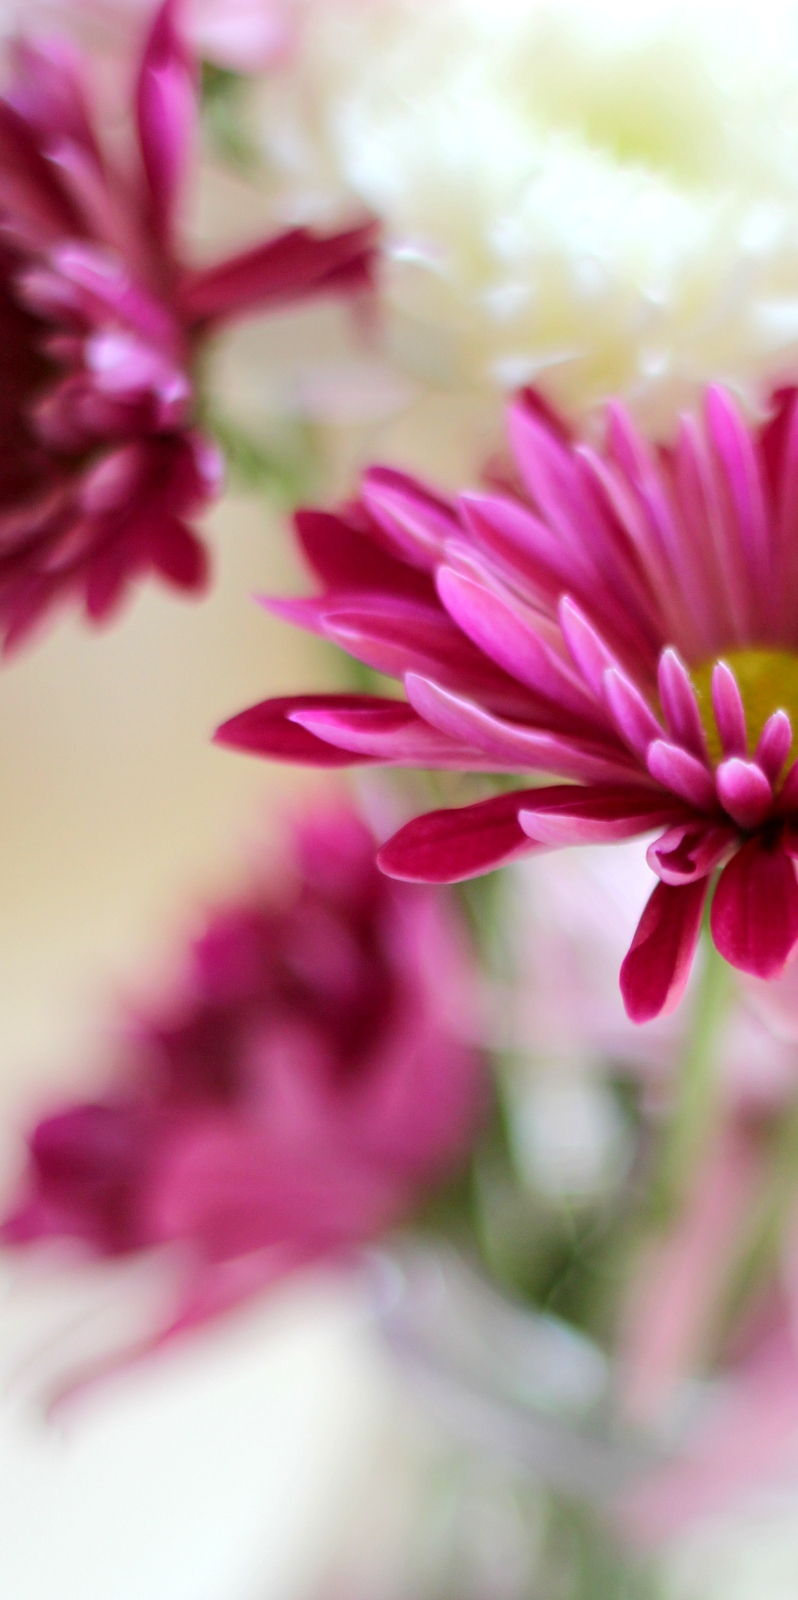 פרח דליה Dahlia בלוג עיצוב מיס גרות צילום לירון גונן (6)